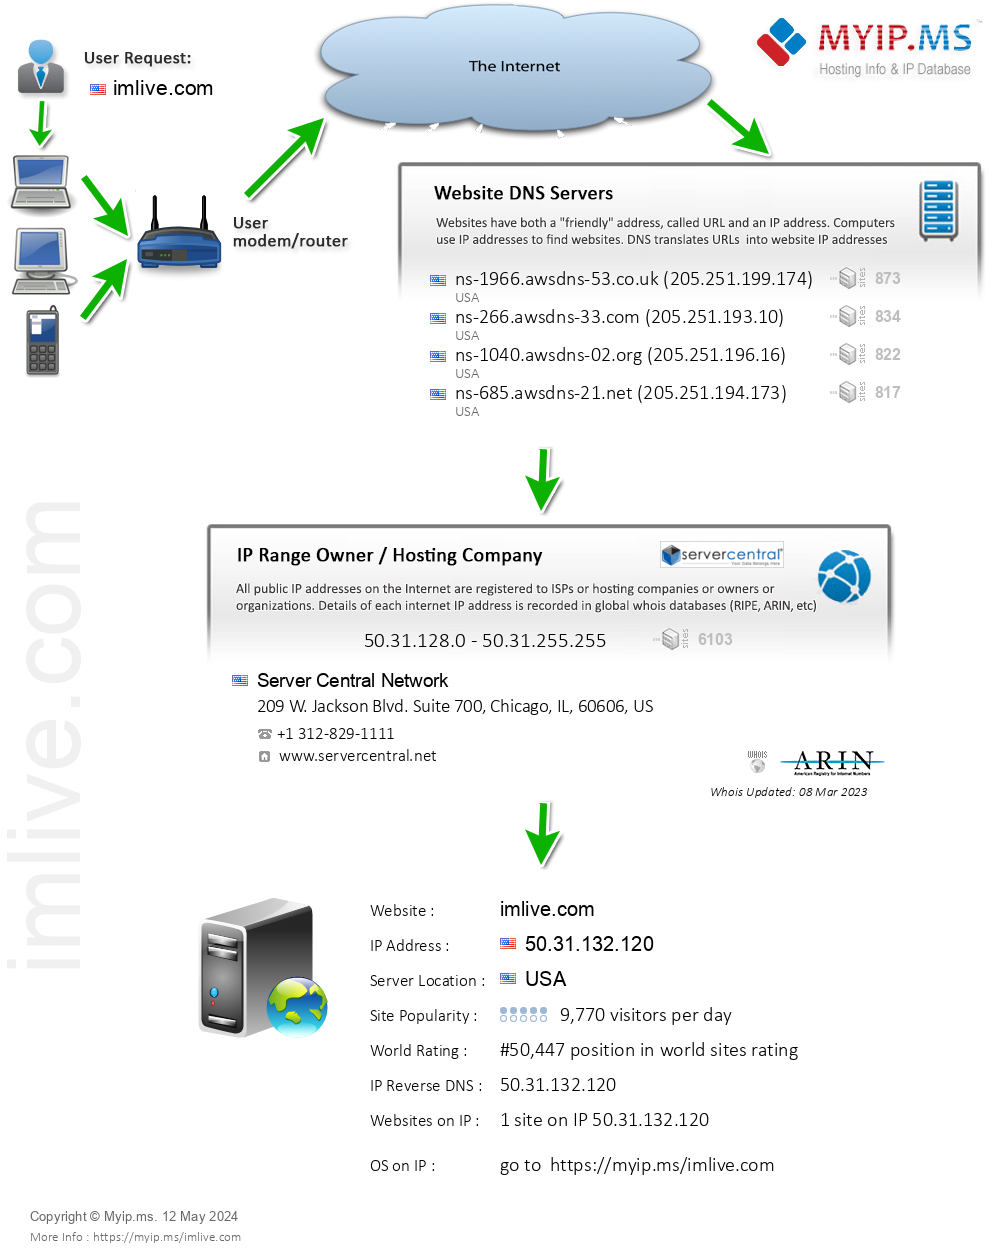 Imlive.com - Website Hosting Visual IP Diagram